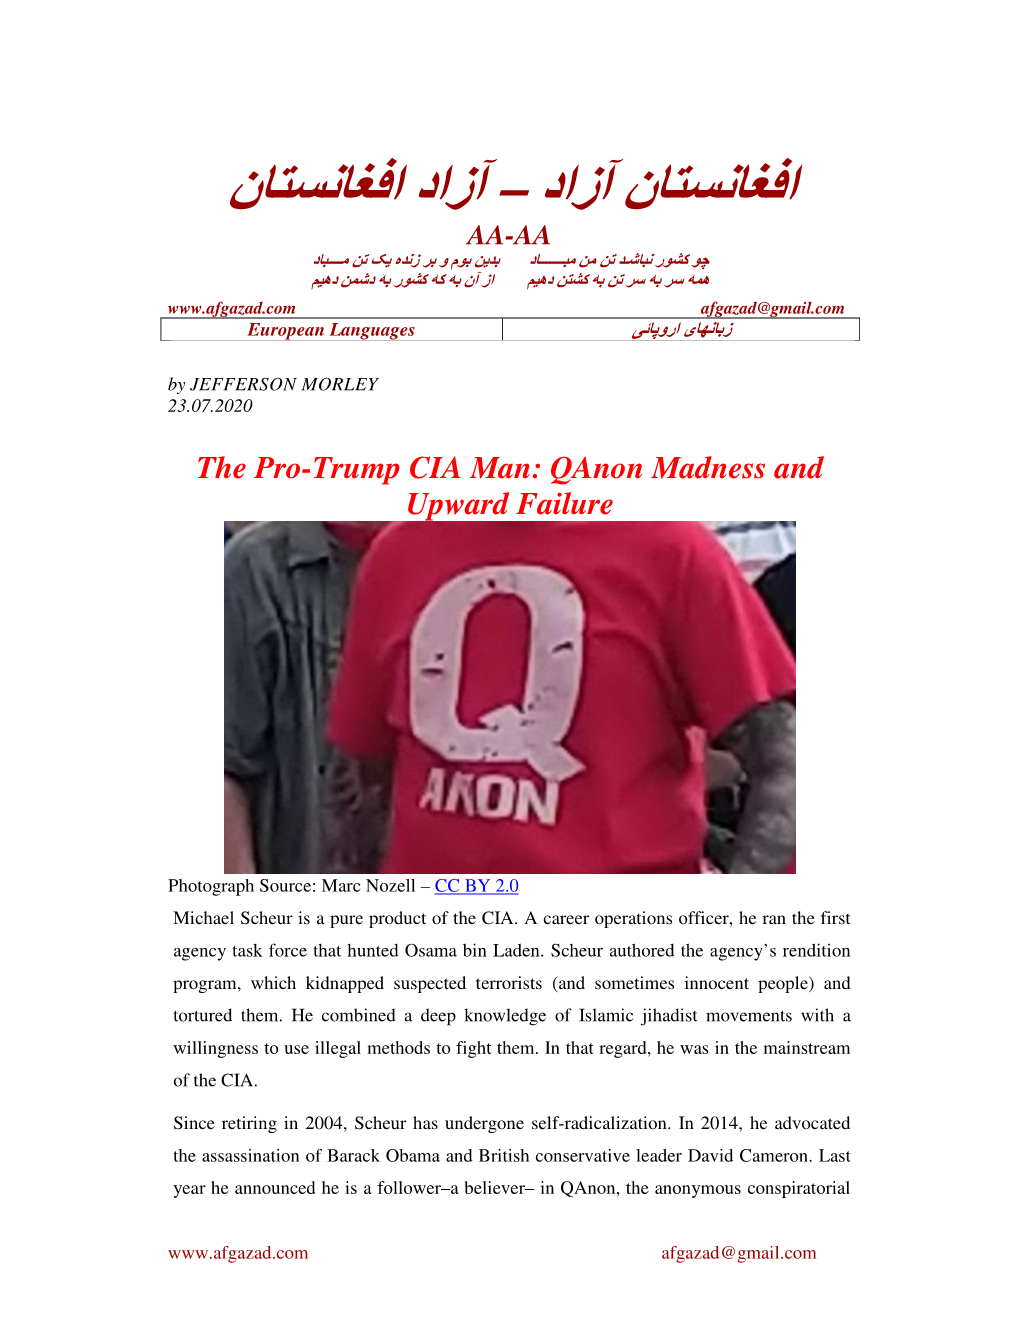 The Pro-Trump CIA Man: Qanon Madness and Upward Failure